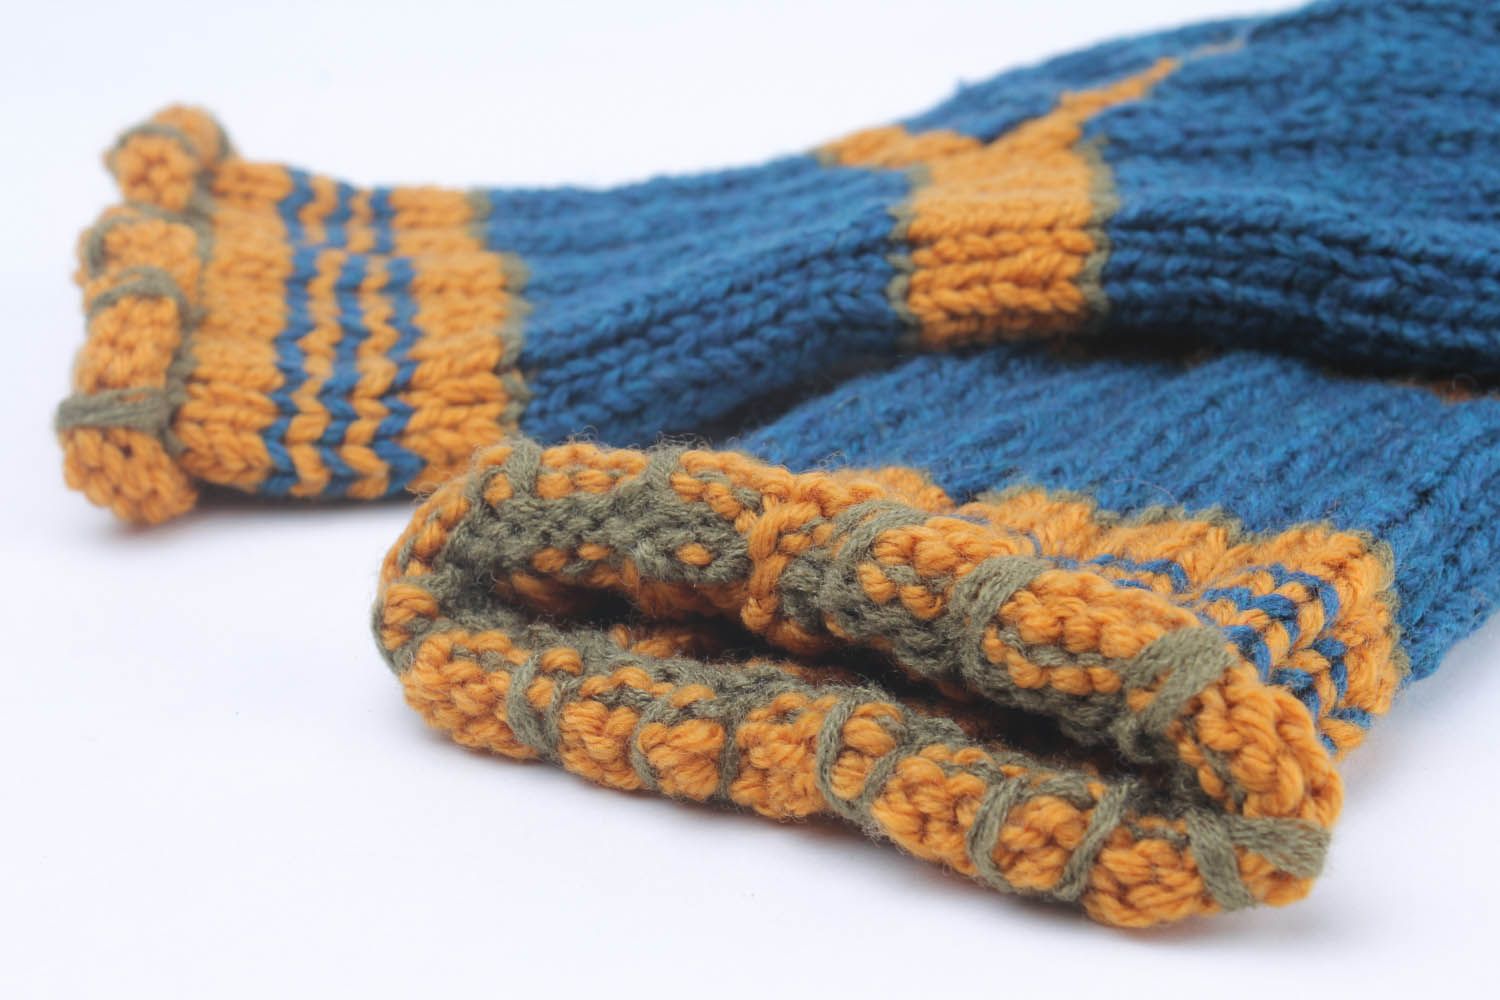 Knitted semi-woolen socks photo 2